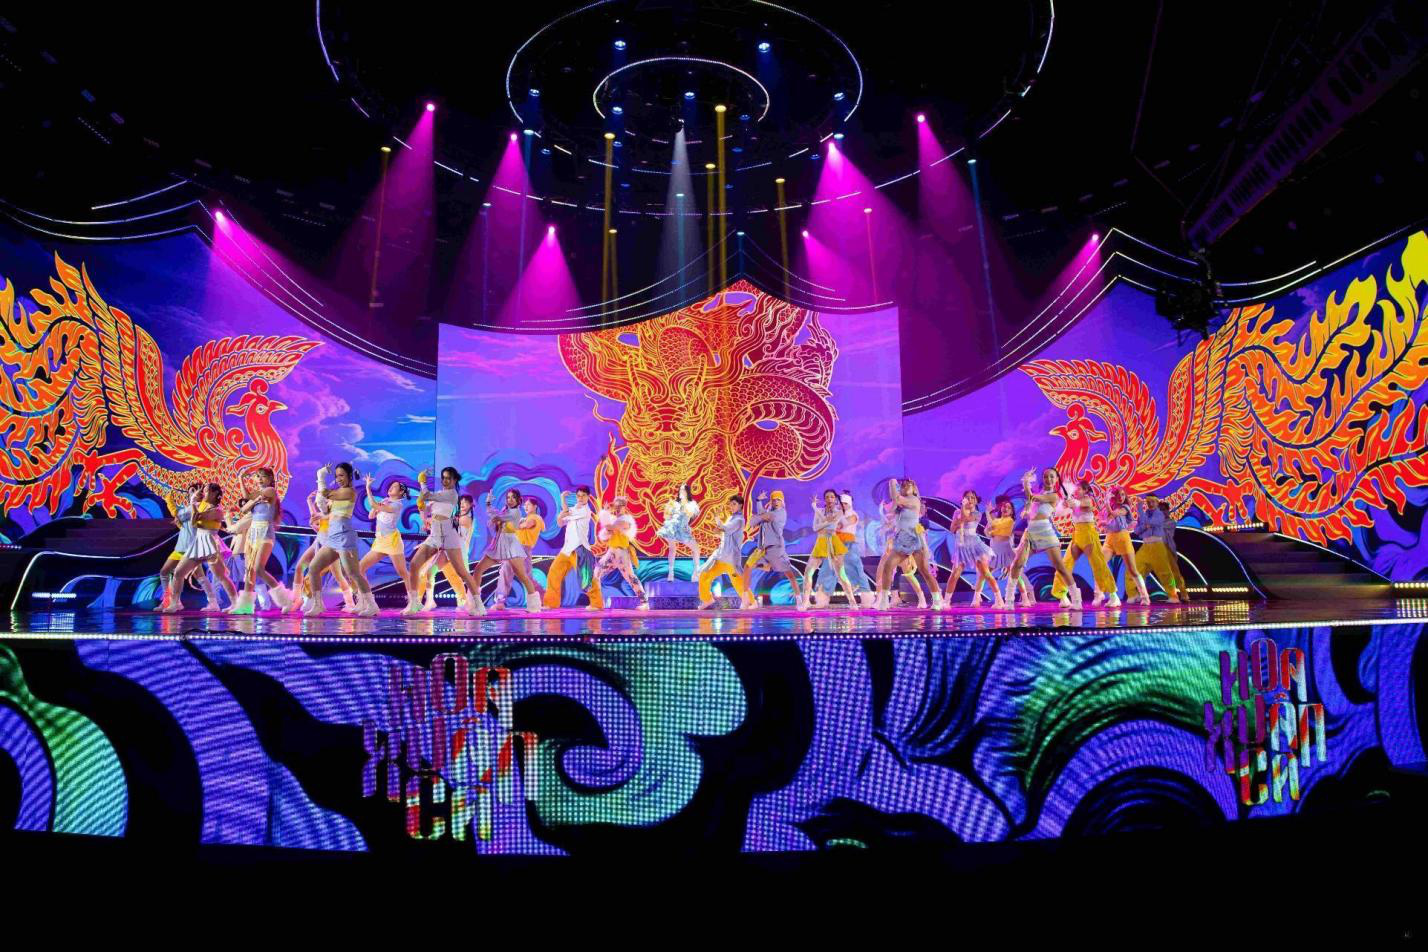 Sân khấu Hoa xuân ca thiết kế đậm chất dân gian đương đại, mang đến đại nhạc hội rực rỡ sắc màu - Ảnh: CTV